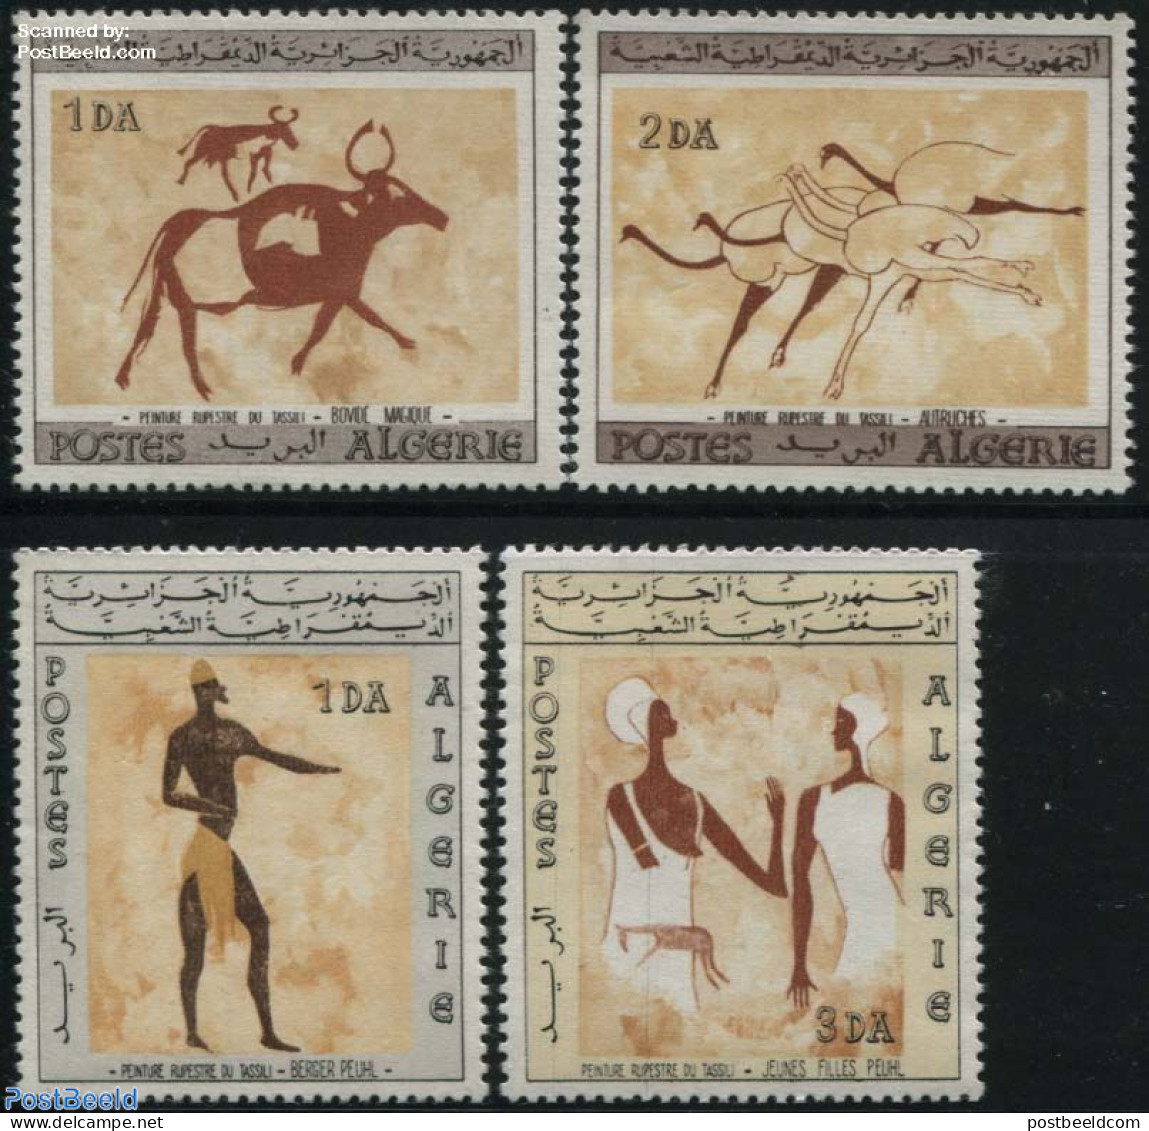 Algeria 1966 Tassili Rock Paintings 4v, Mint NH, Art - Cave Paintings - Unused Stamps